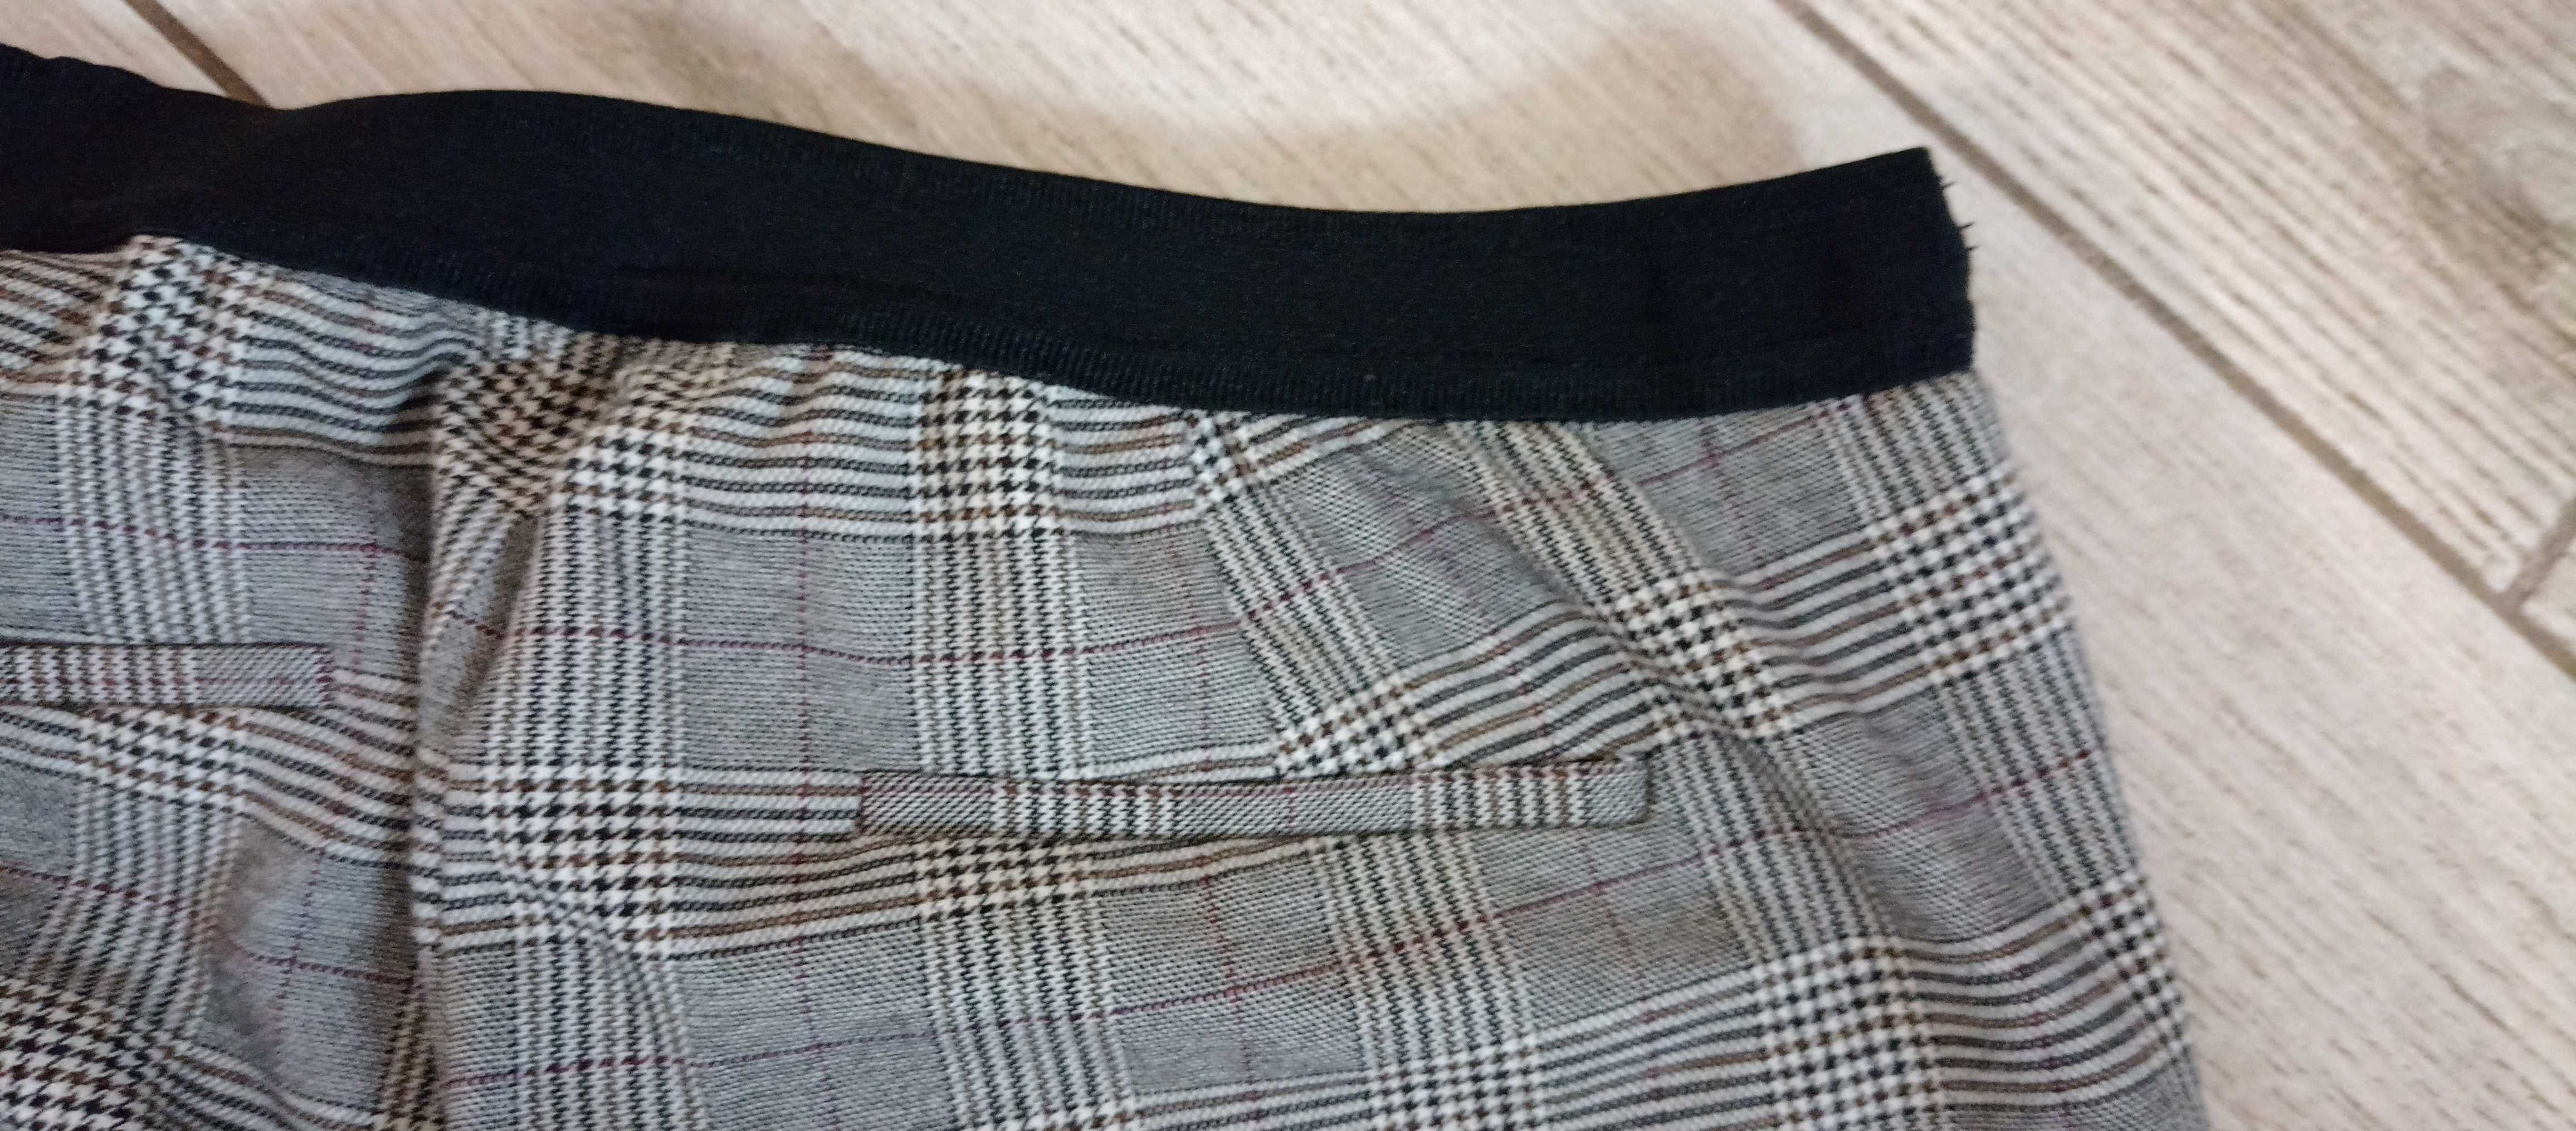 Spodnie w kratkę, LCW bardzo ładne, gumka, wygodne, bdb, L